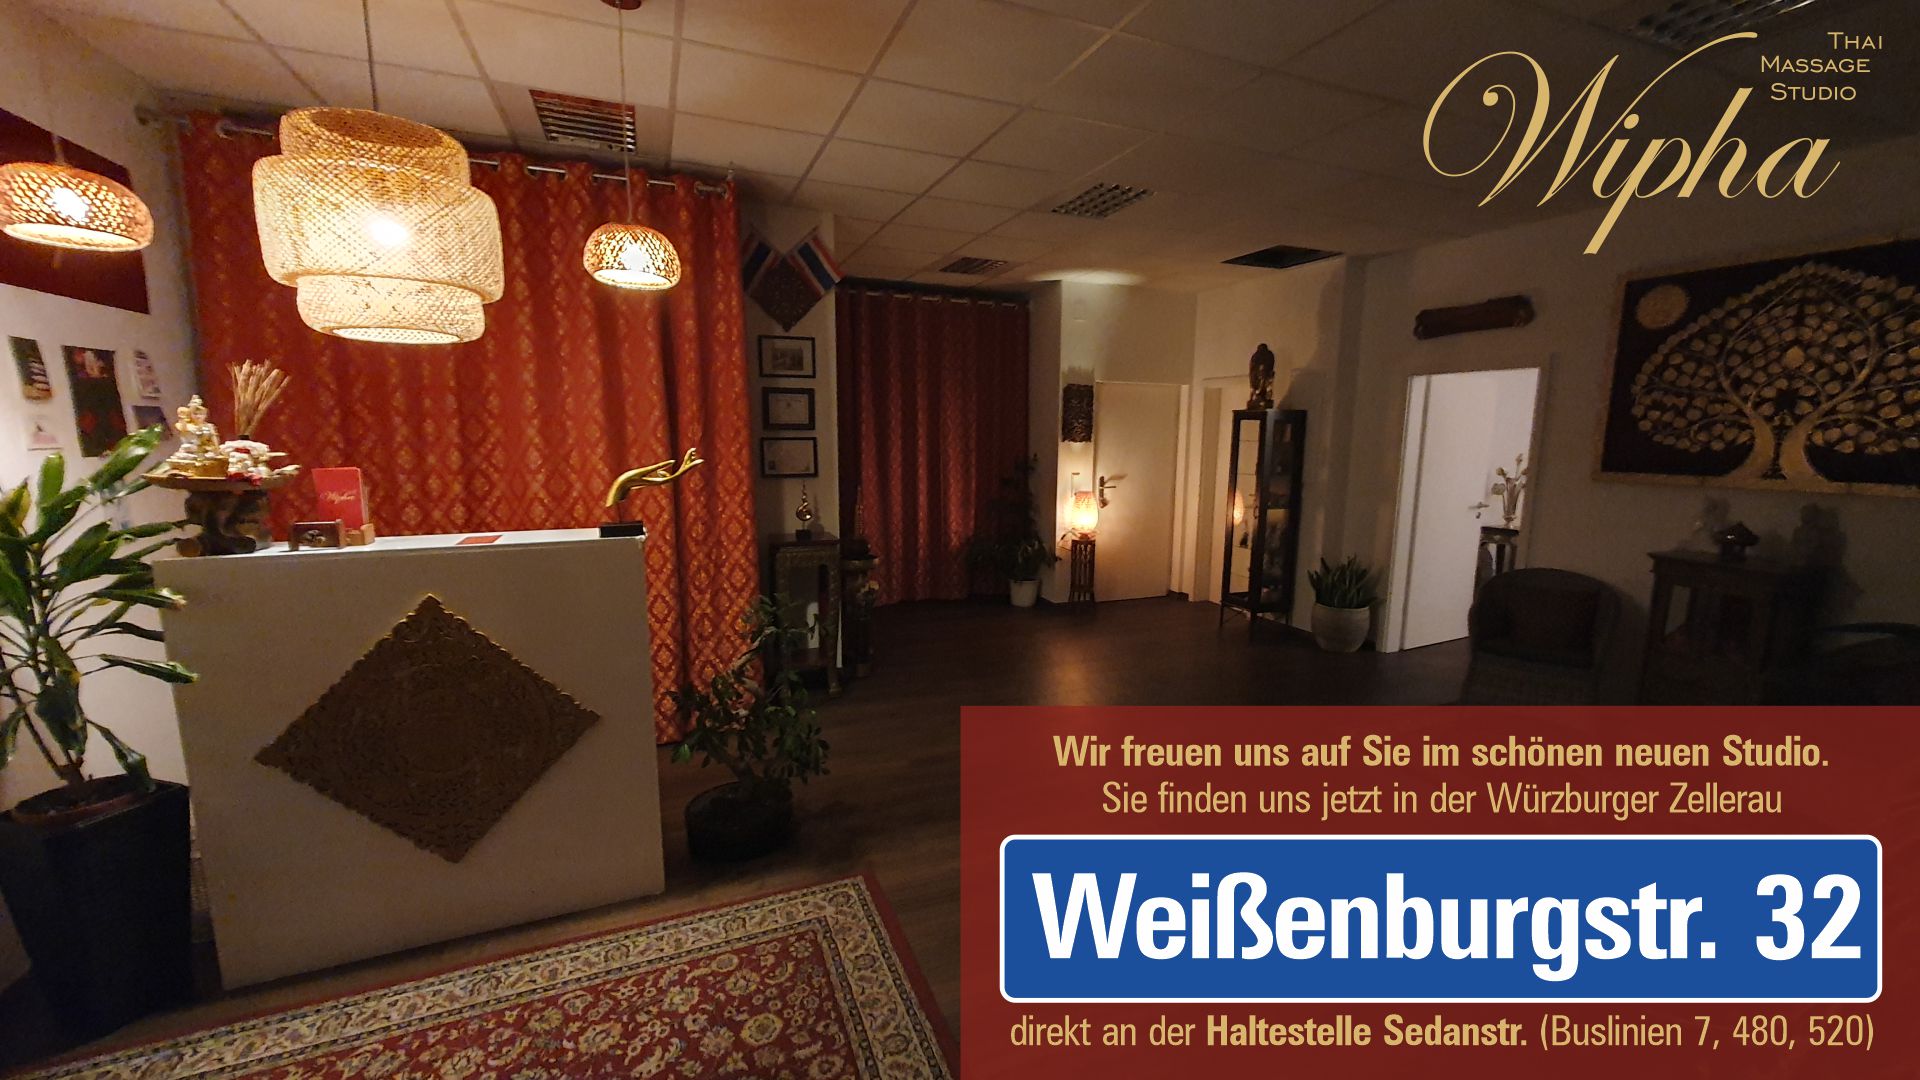 Wipha Thai Massage Studio Würzburg. Wir sind umgezogen. Sie finden unser schönes, neues Studio jetzt in der Weißenburgstr. 32 in der Würzburger Zelleraqu.